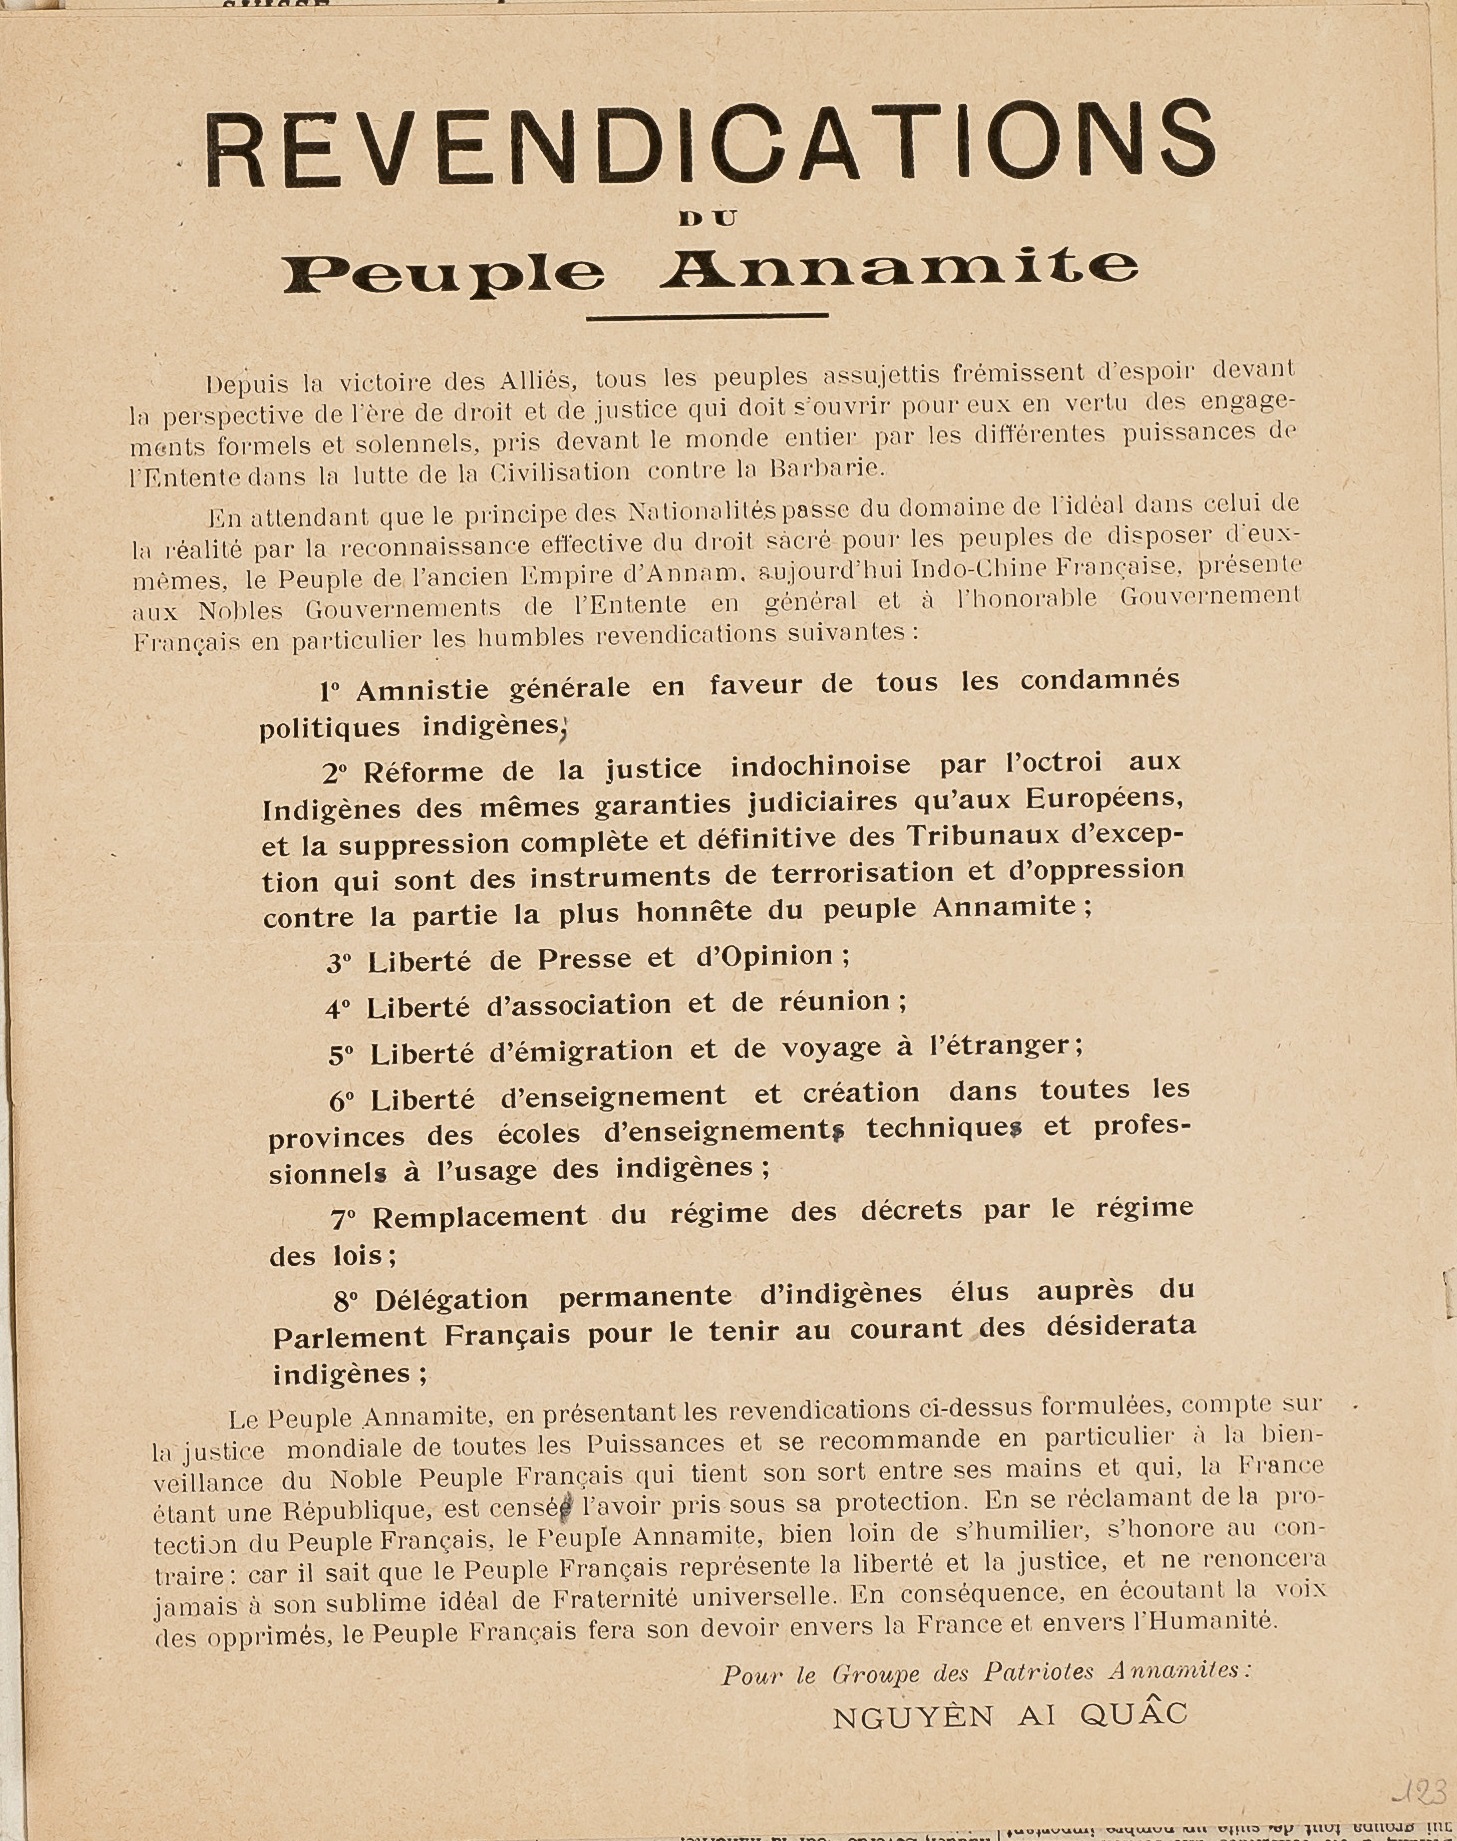 SLOTFOM XV 1 : Revendications du peuple annamite, 1919, dossier de surveillance de Nguyen Ai Quôc